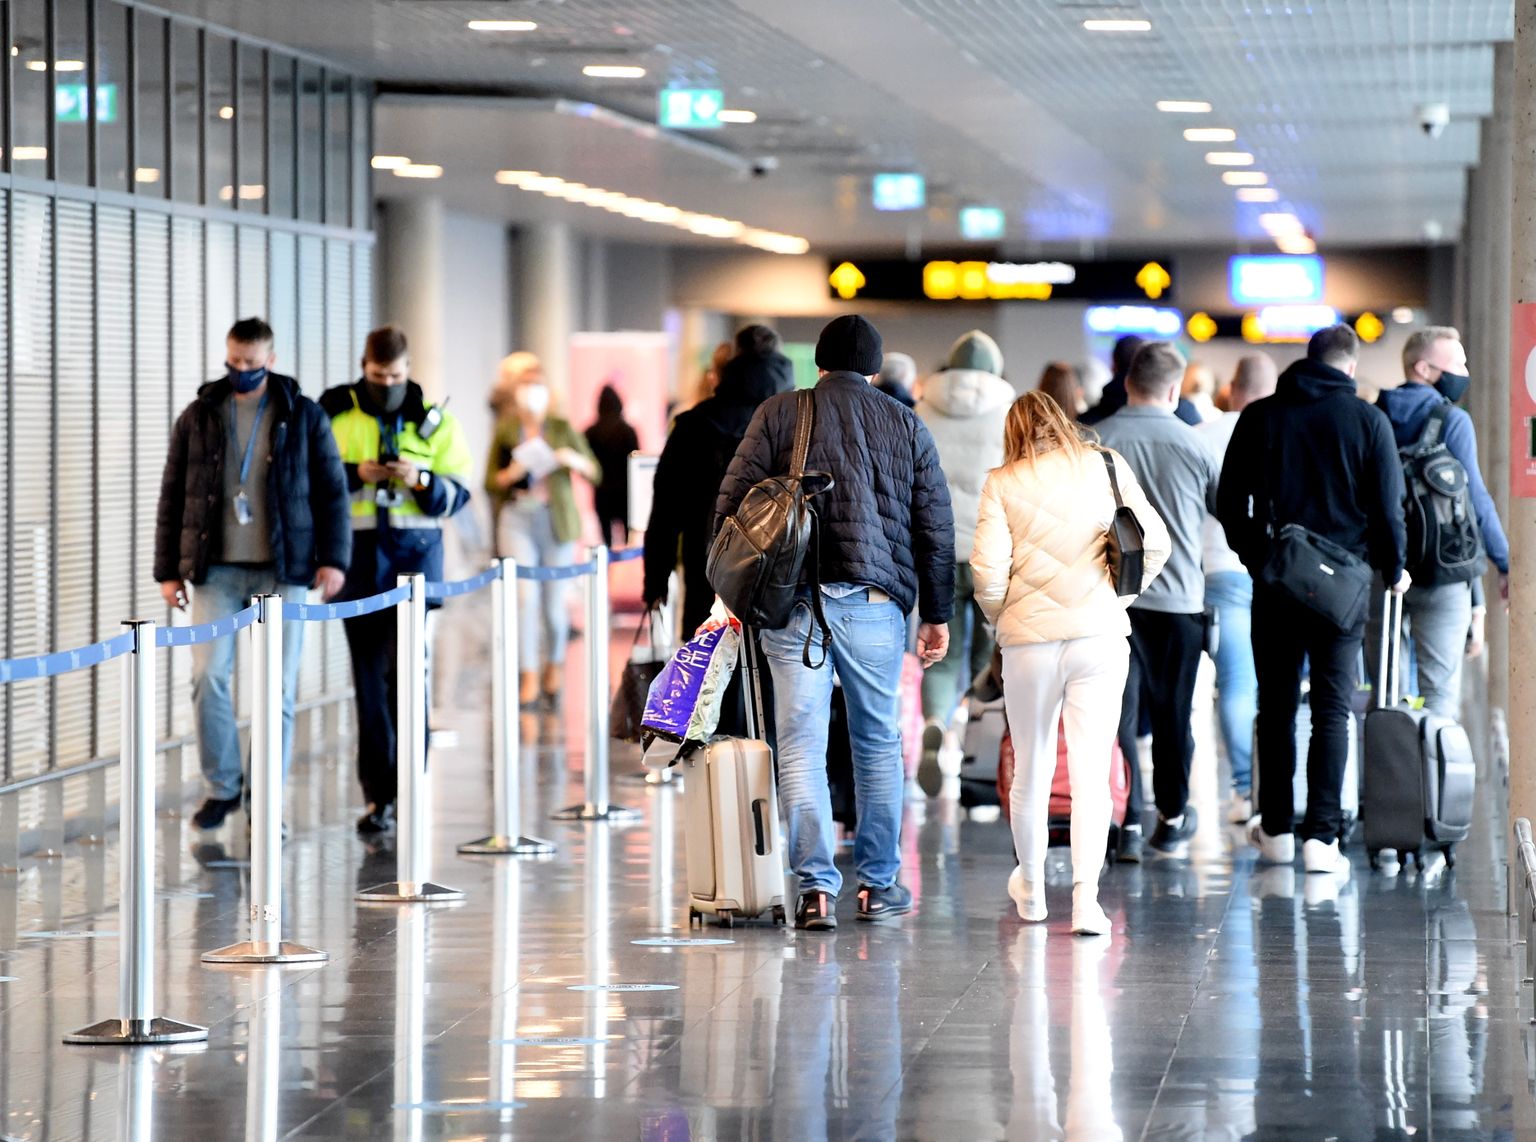 Pasažieri ielidošanas terminālī starptautiskajā lidostā "Rīga".